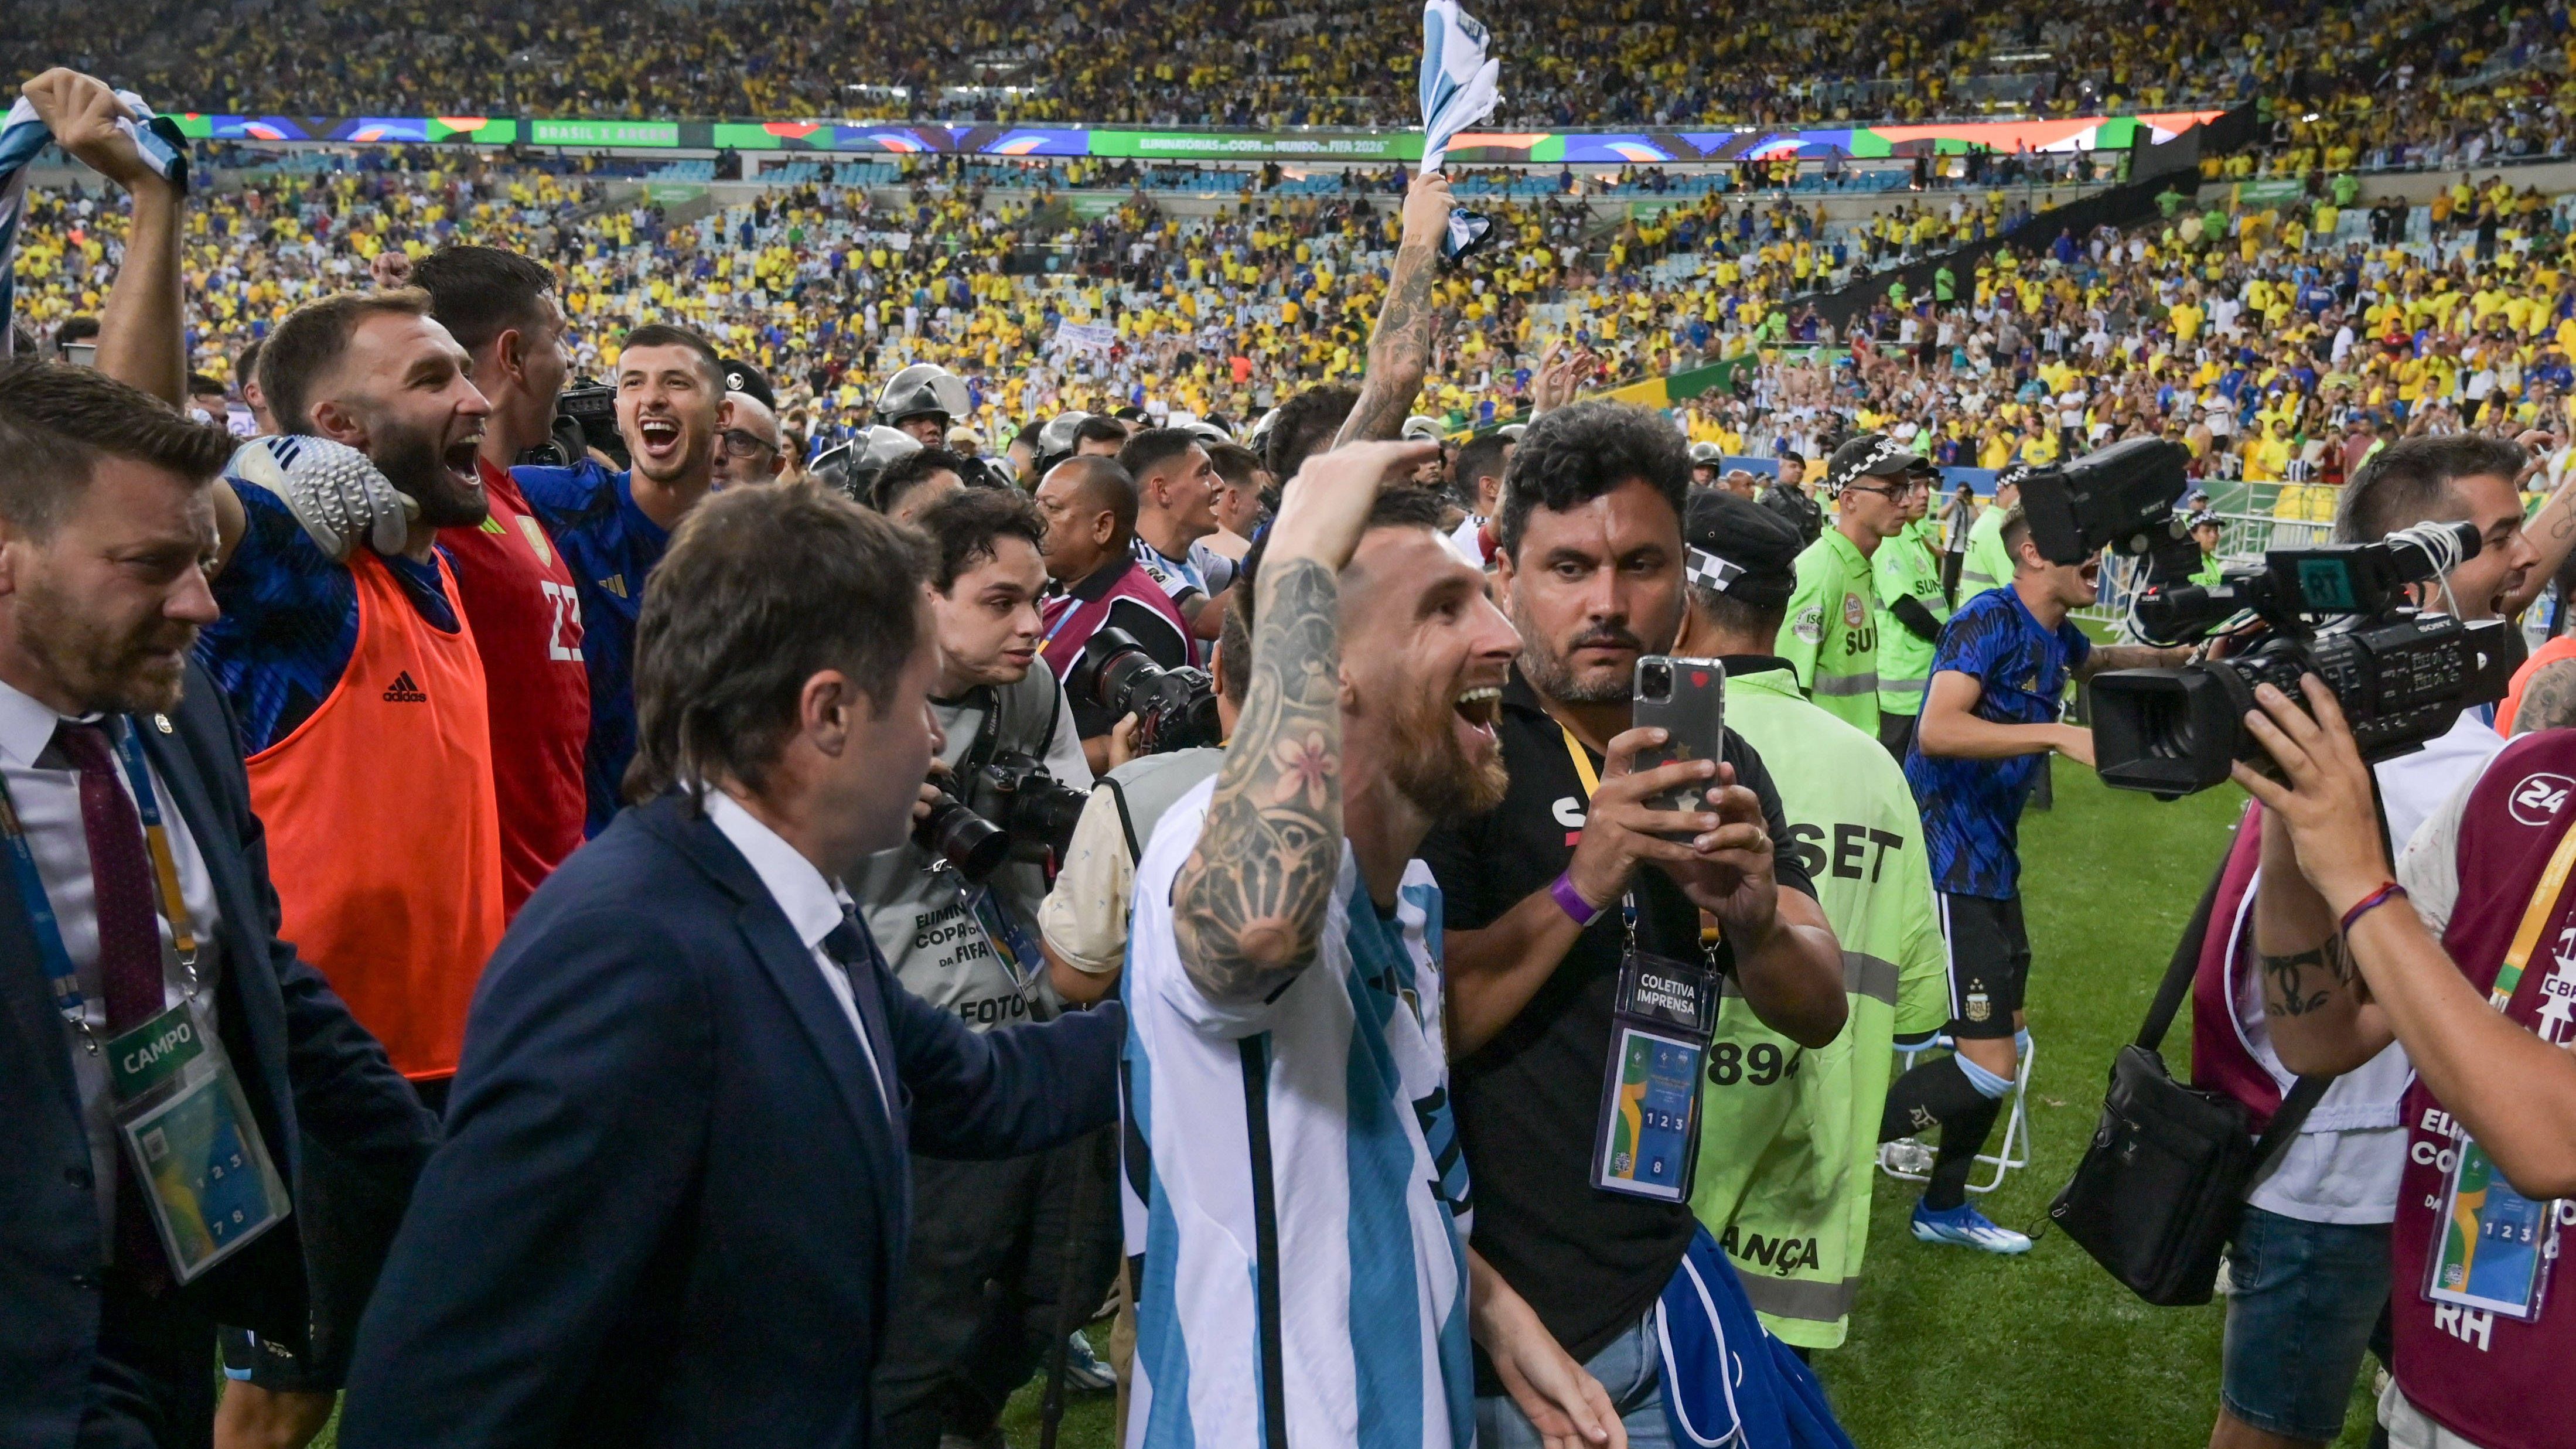 <strong>Lionel Messi Titelverteidiger bei der Weltfußballerwahl: Alle Sieger seit 1991</strong><br>Nach der  Ballon d'Or-Wahl im November gewinnt Lionel Messi auch die Wahl zum Weltfußballer 2023. Bereits im vergangenen Jahr holte der Argentinier diesen Titel. <strong><em>ran</em></strong> zeigt, wer seit 1991 die Weltfußballer-Wahl gewonnen hat.